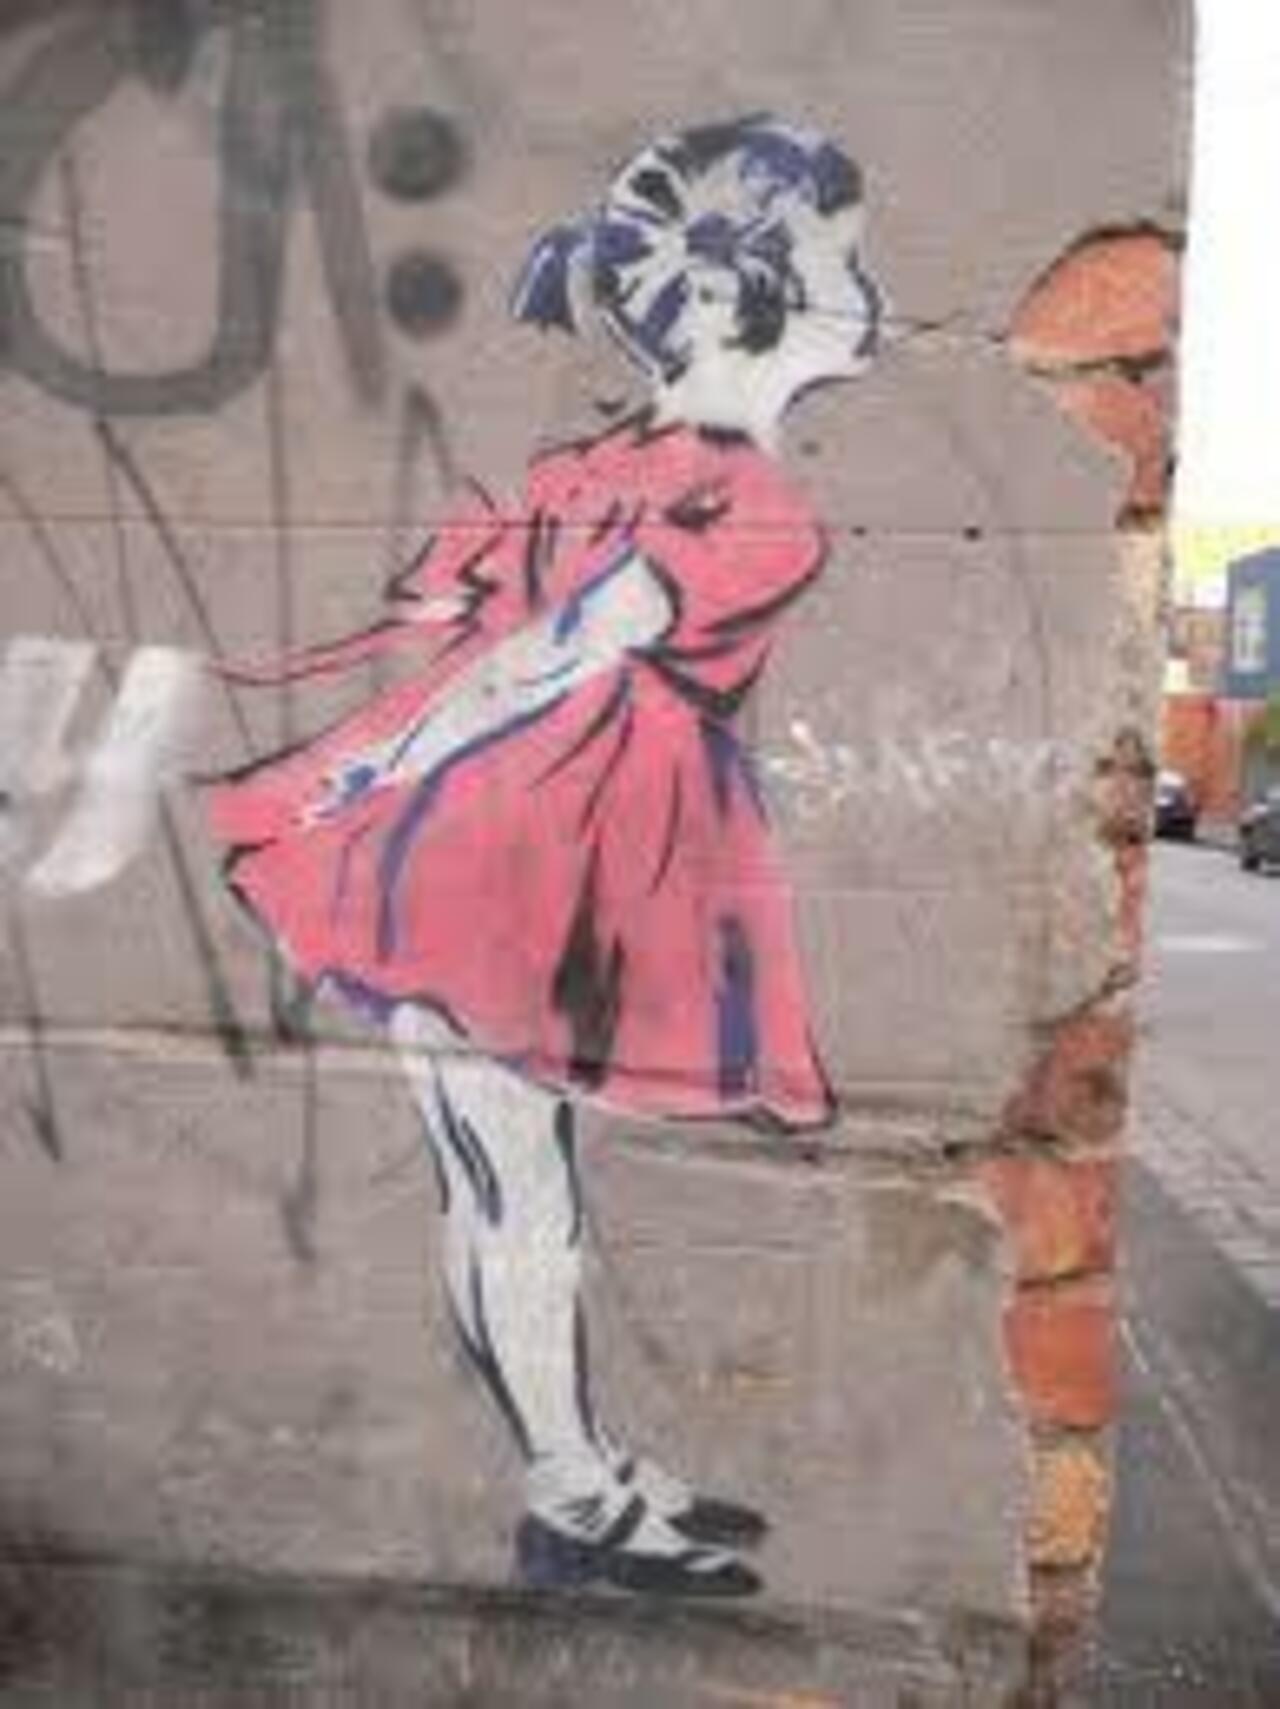 #streetart #art #street #graffiti http://t.co/cixXSIbcju